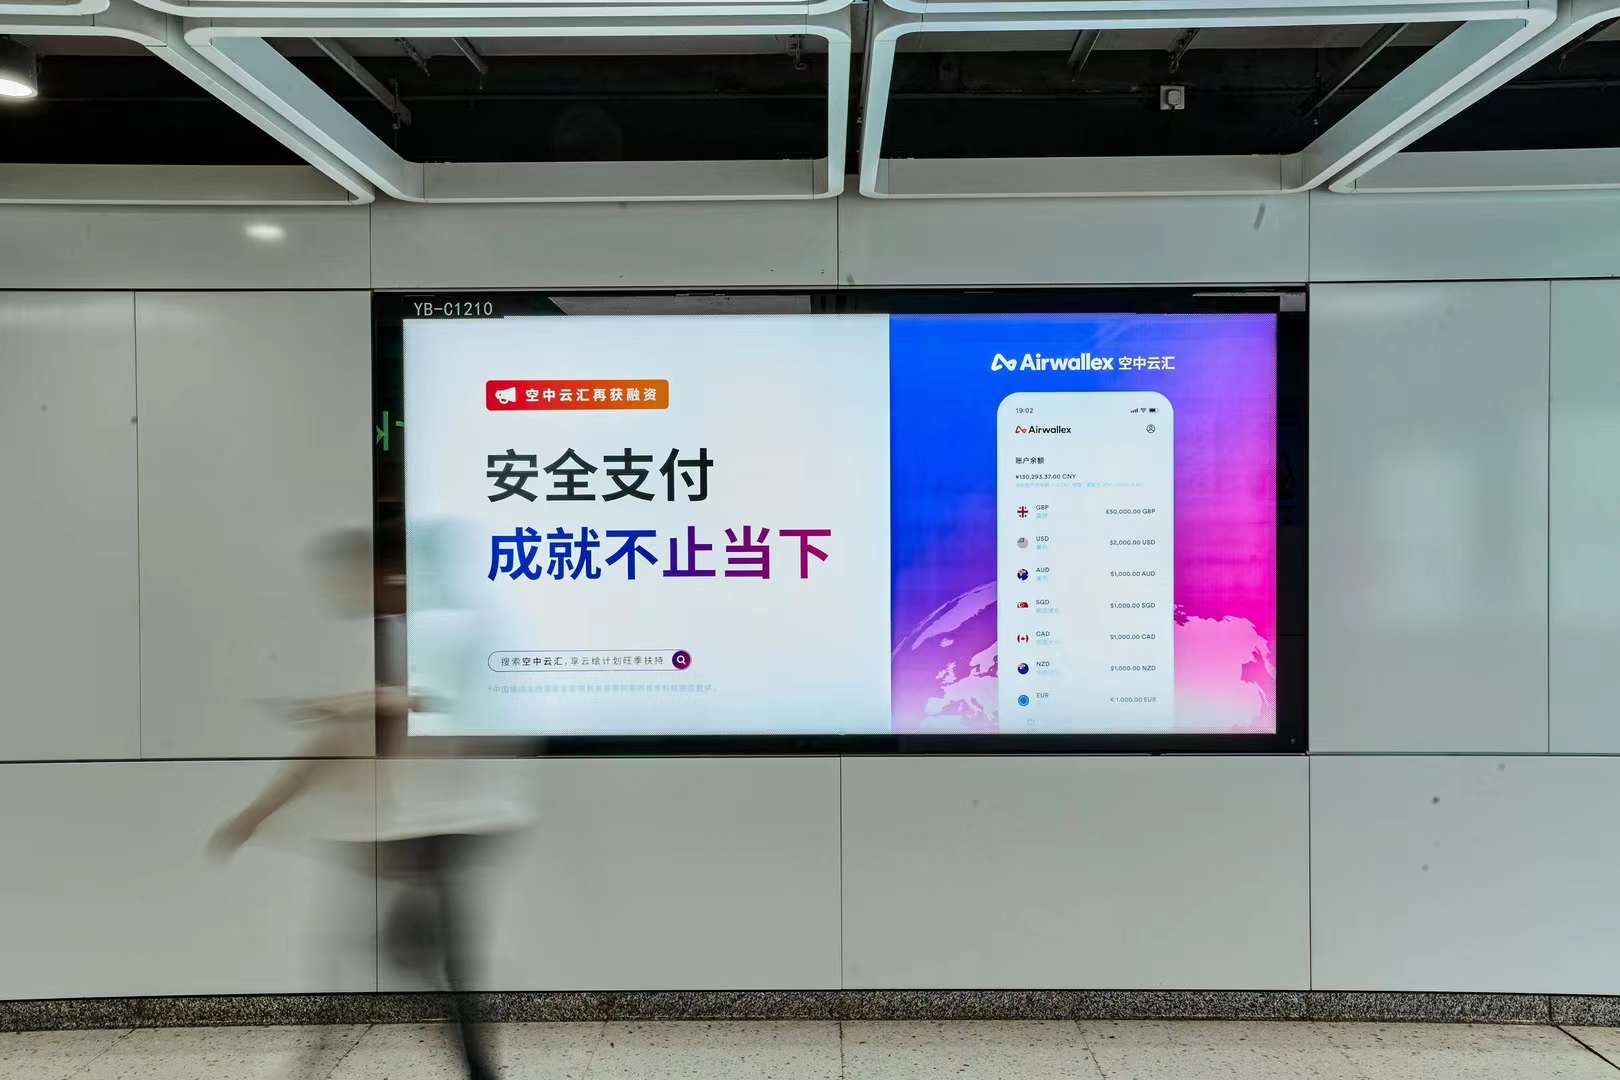 深圳市城市轨道广告有限公司推出新品特惠整体家居